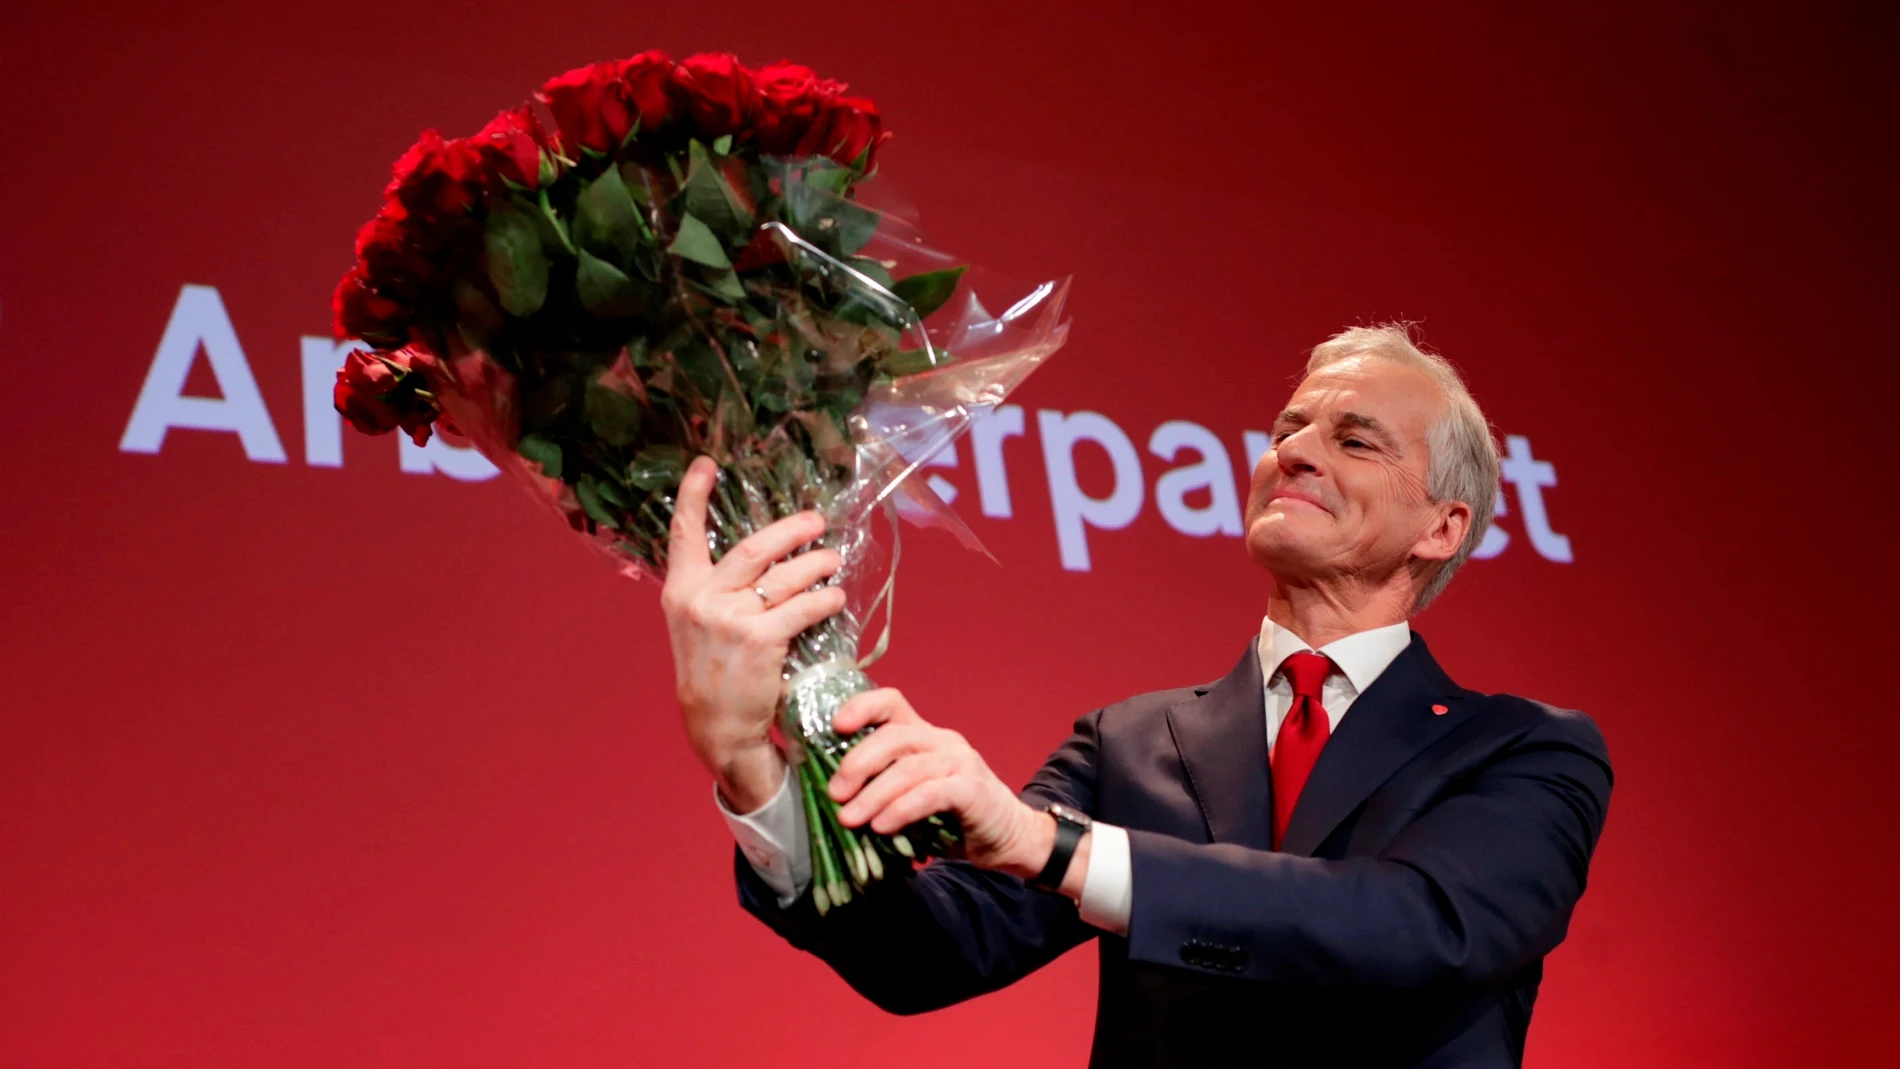 Jonas Gahr Store ha recuperado para los socialdemócratas noruegos el Gobierno tras una travesía en al oposición de ocho años.